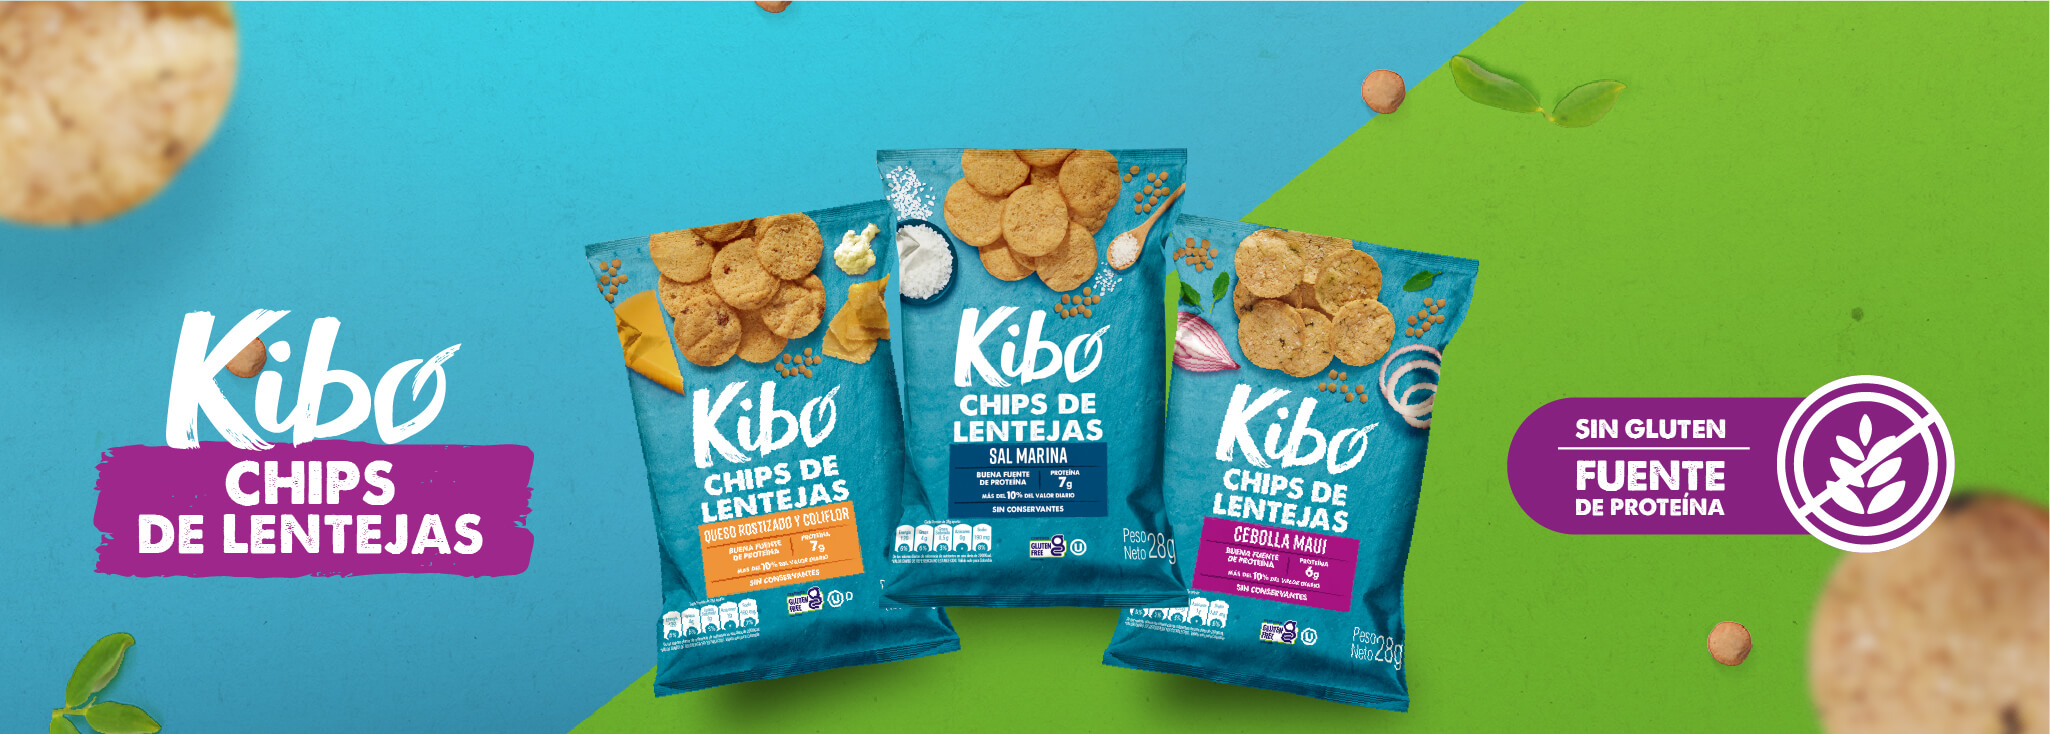 Kibo Foods Snacks Y Alimentos De Proteína De Vegetal 2589